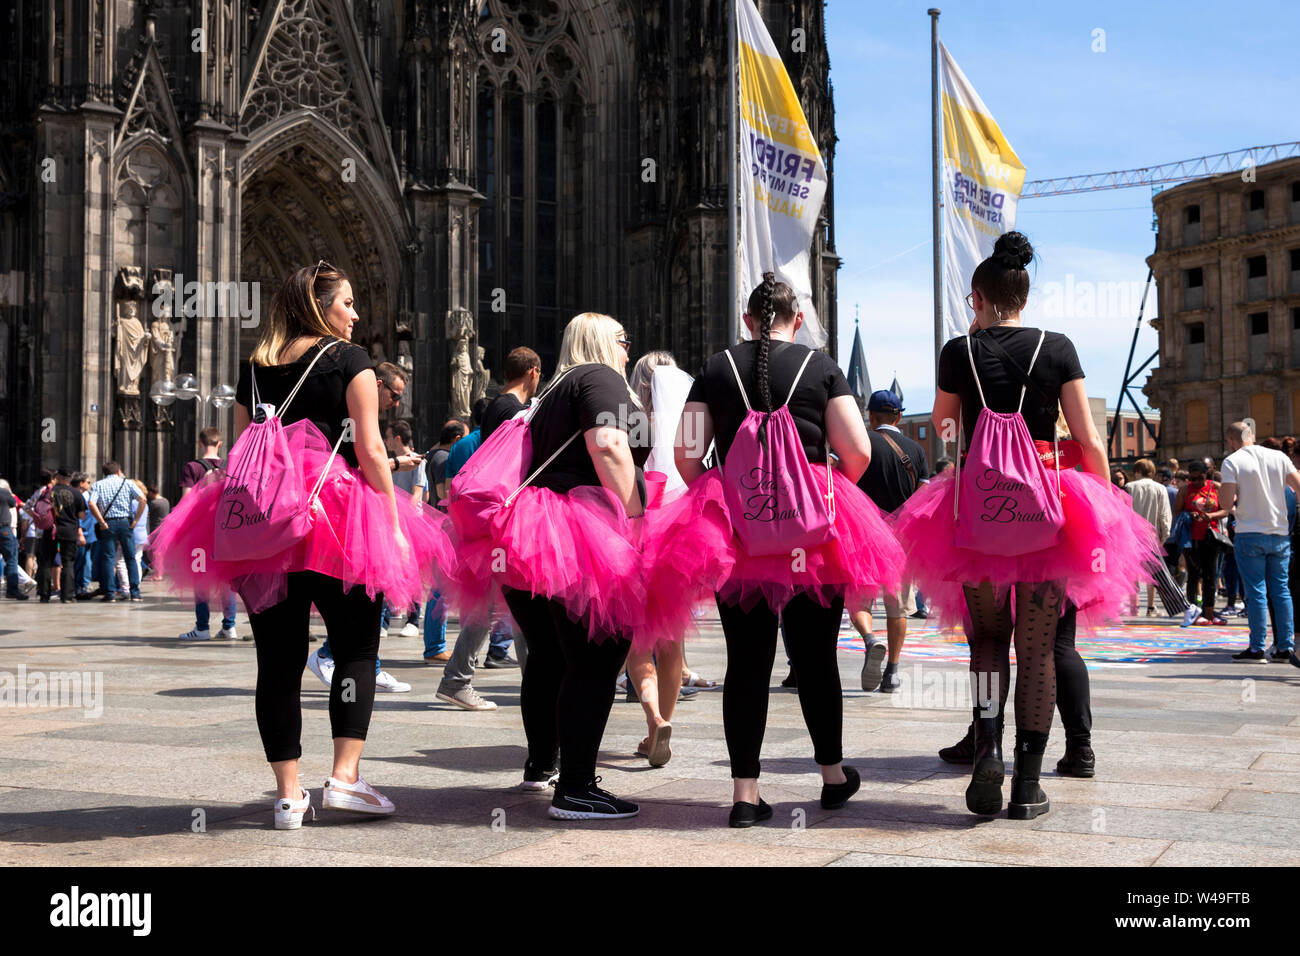 Partie de bachelorette, les femmes en jupes tulle rose en face de la cathédrale, Cologne, Allemagne. Dans pinkfarbenen Junggesellinnenabschied Tuellroec, Frauen Banque D'Images